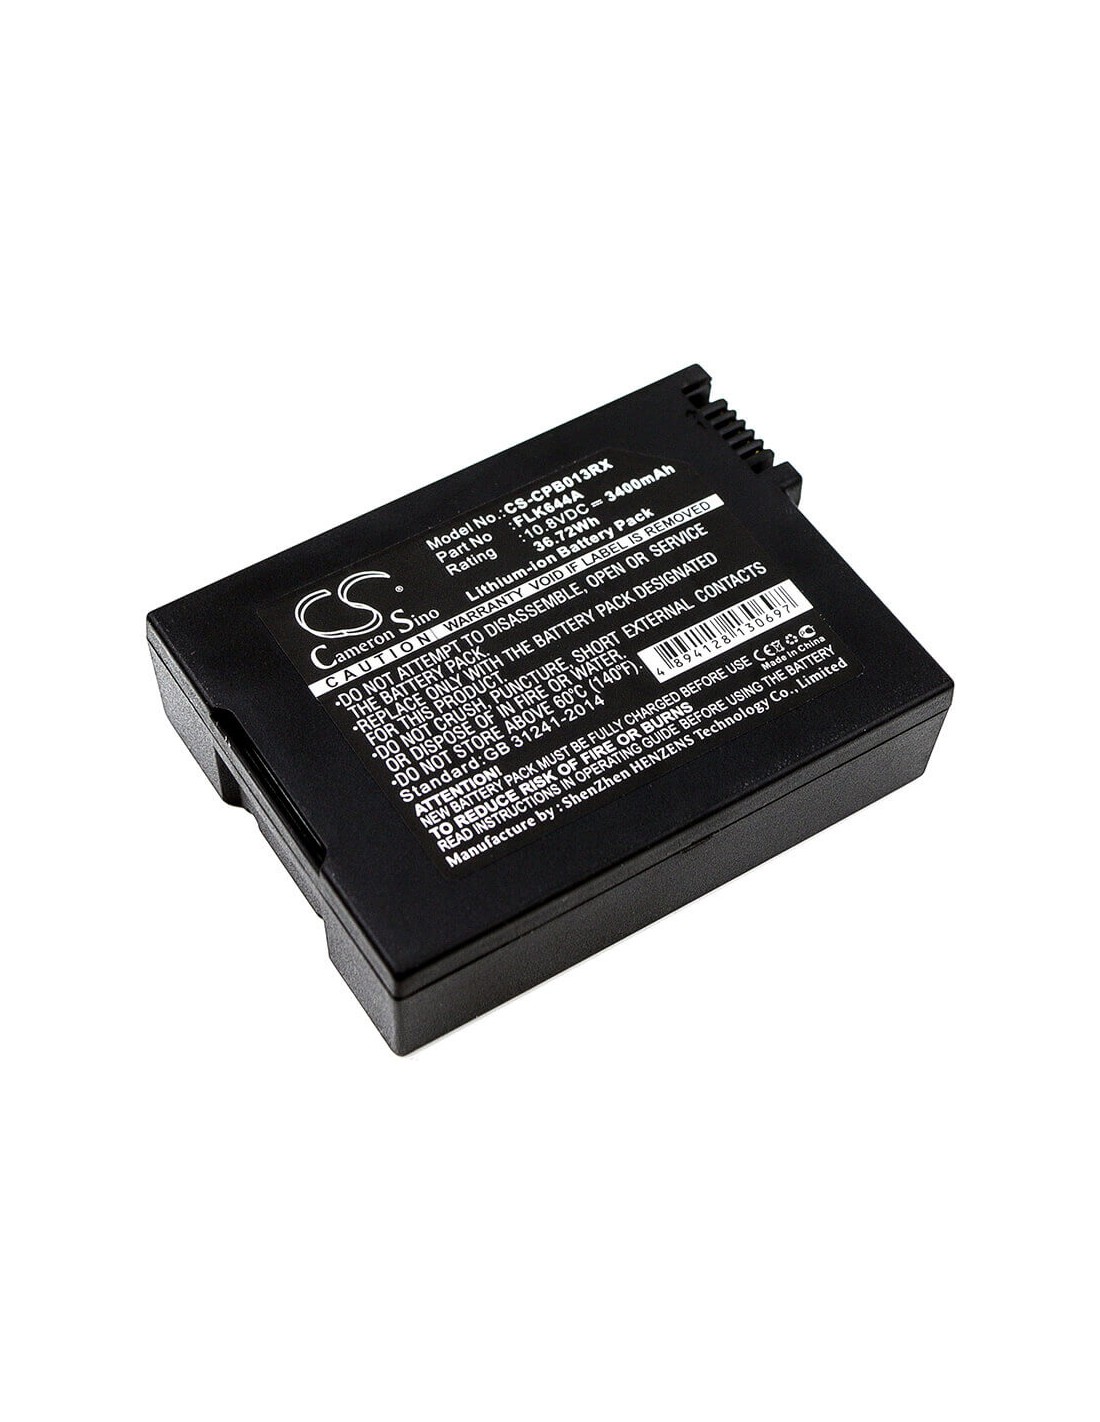 Battery for Foxlink, Flk644a 10.8V, 3400mAh - 36.72Wh